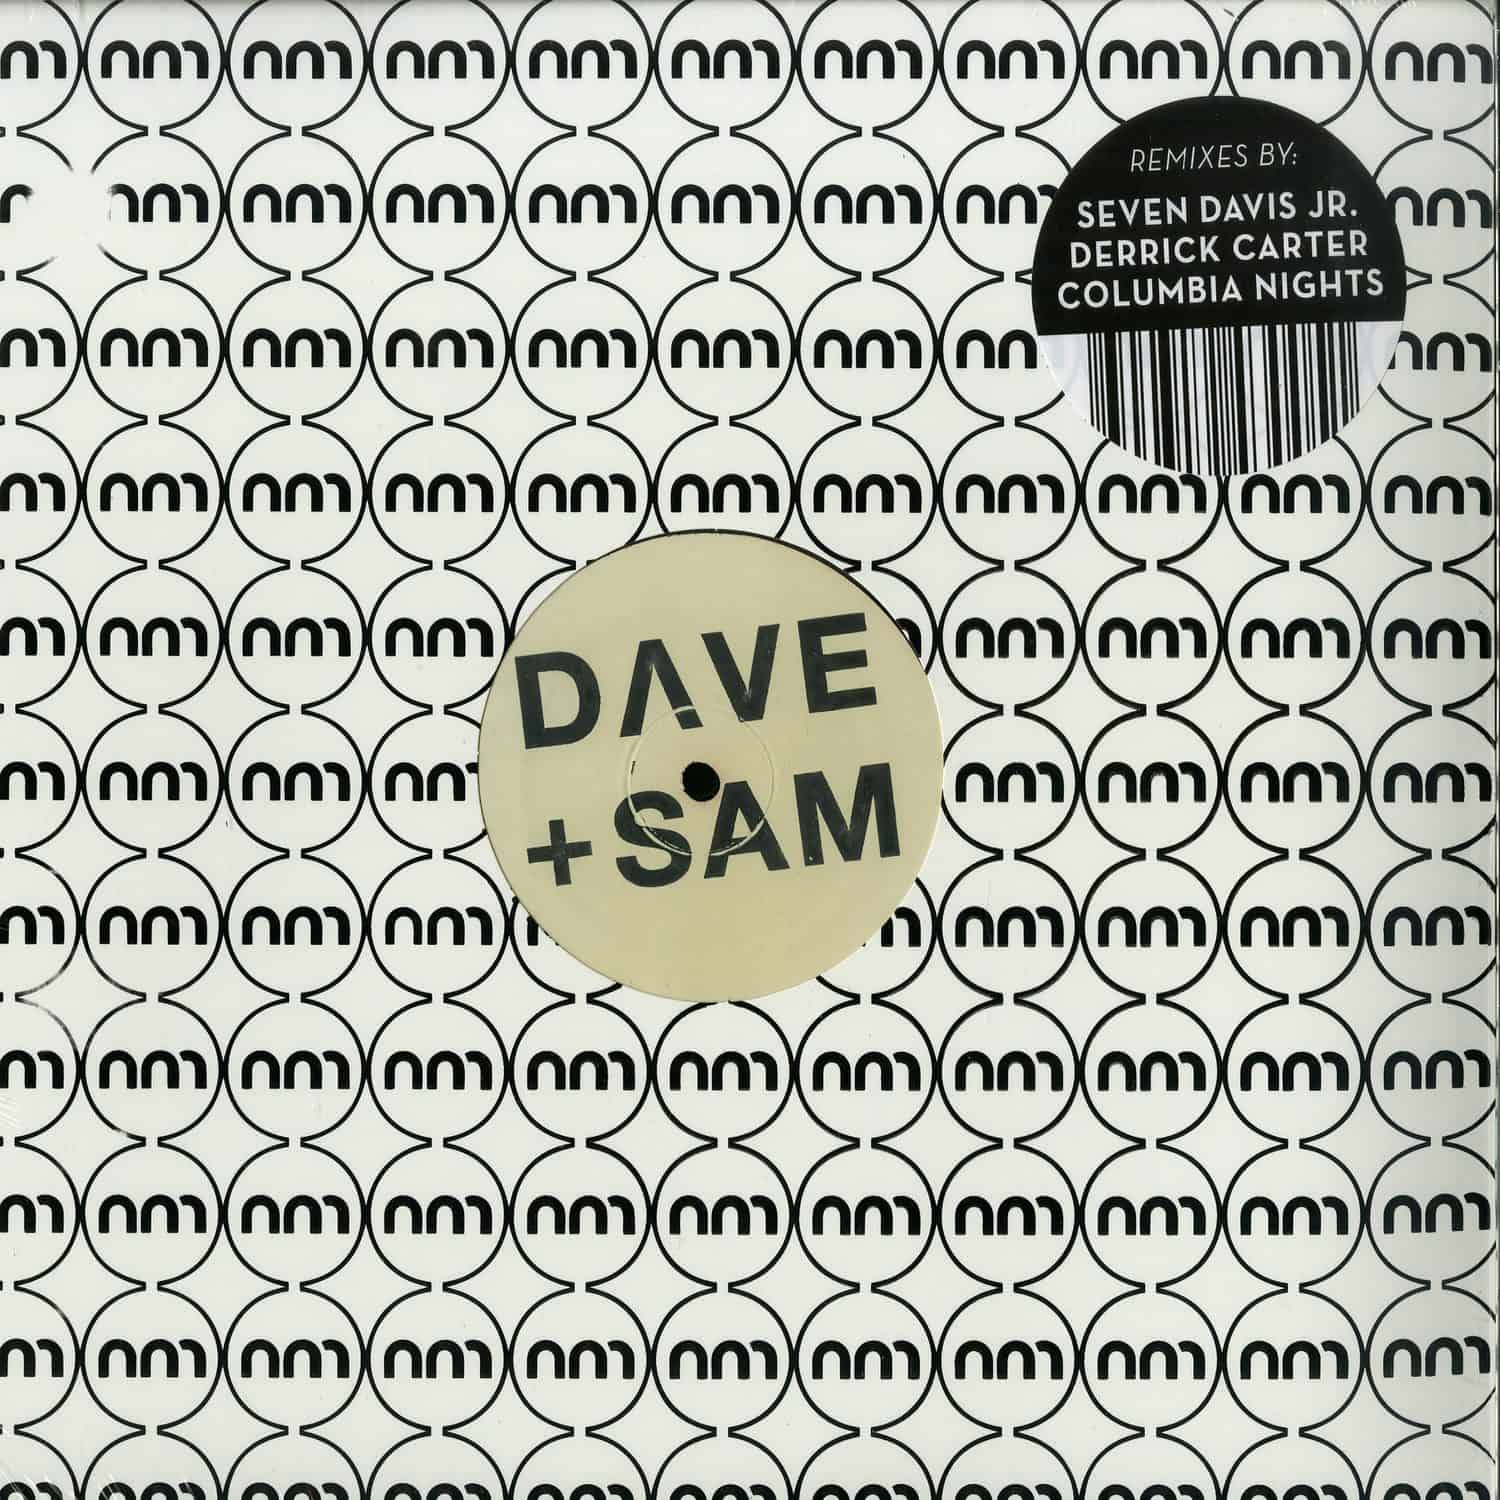 Dave + Sam - YOU DA SHIT GIRL 